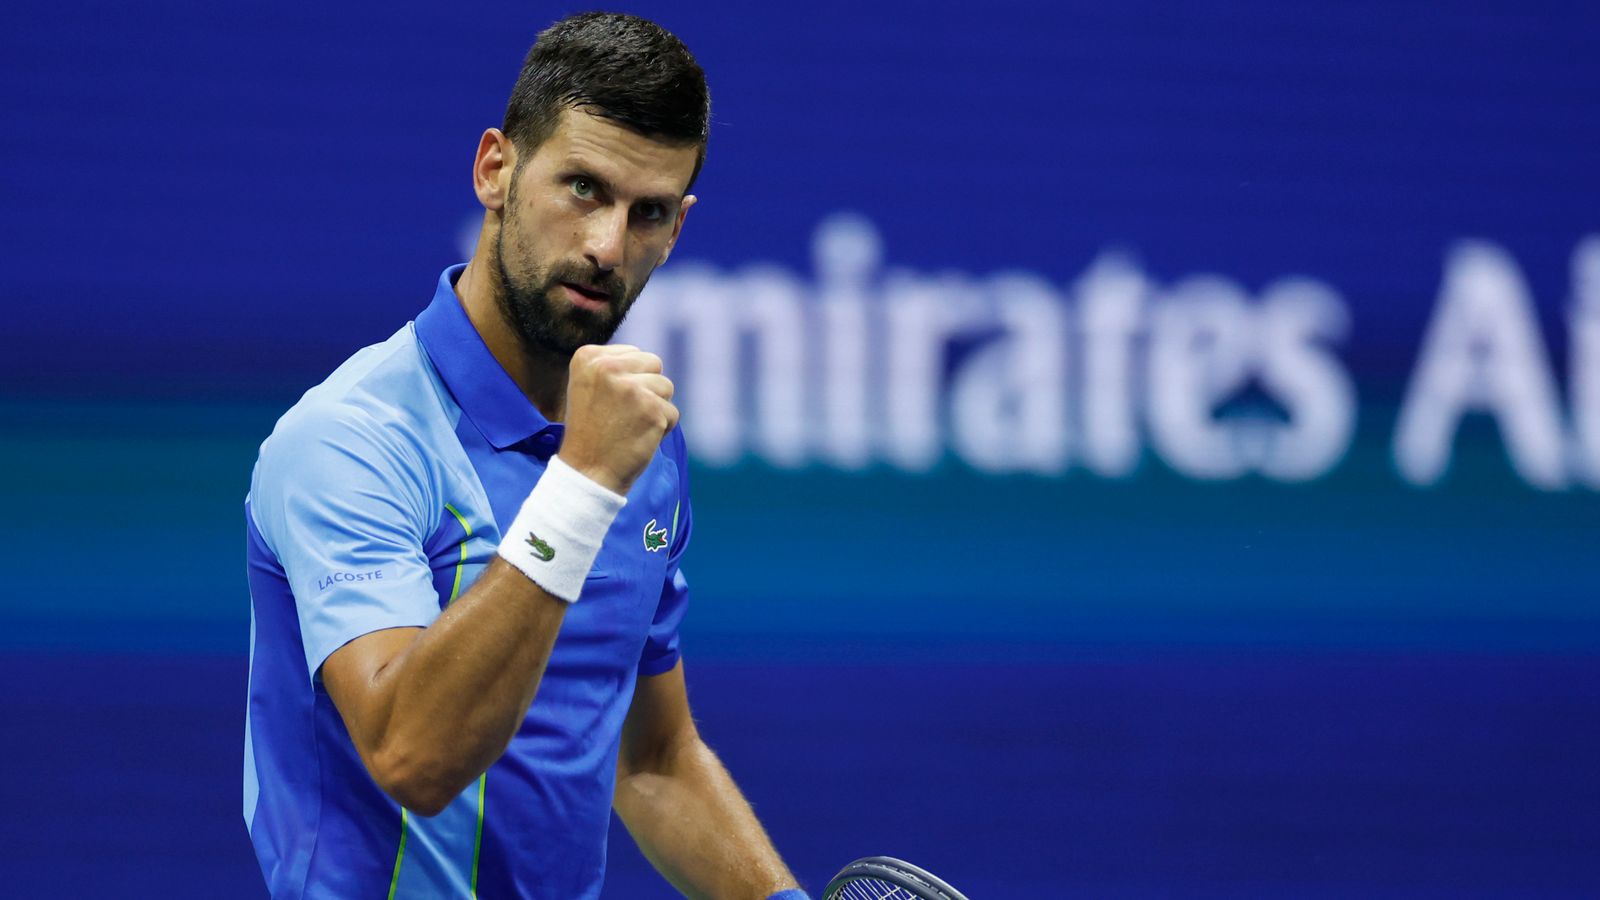 US Open: Novak Djokovic returns to New York with opening win to reclaim ...